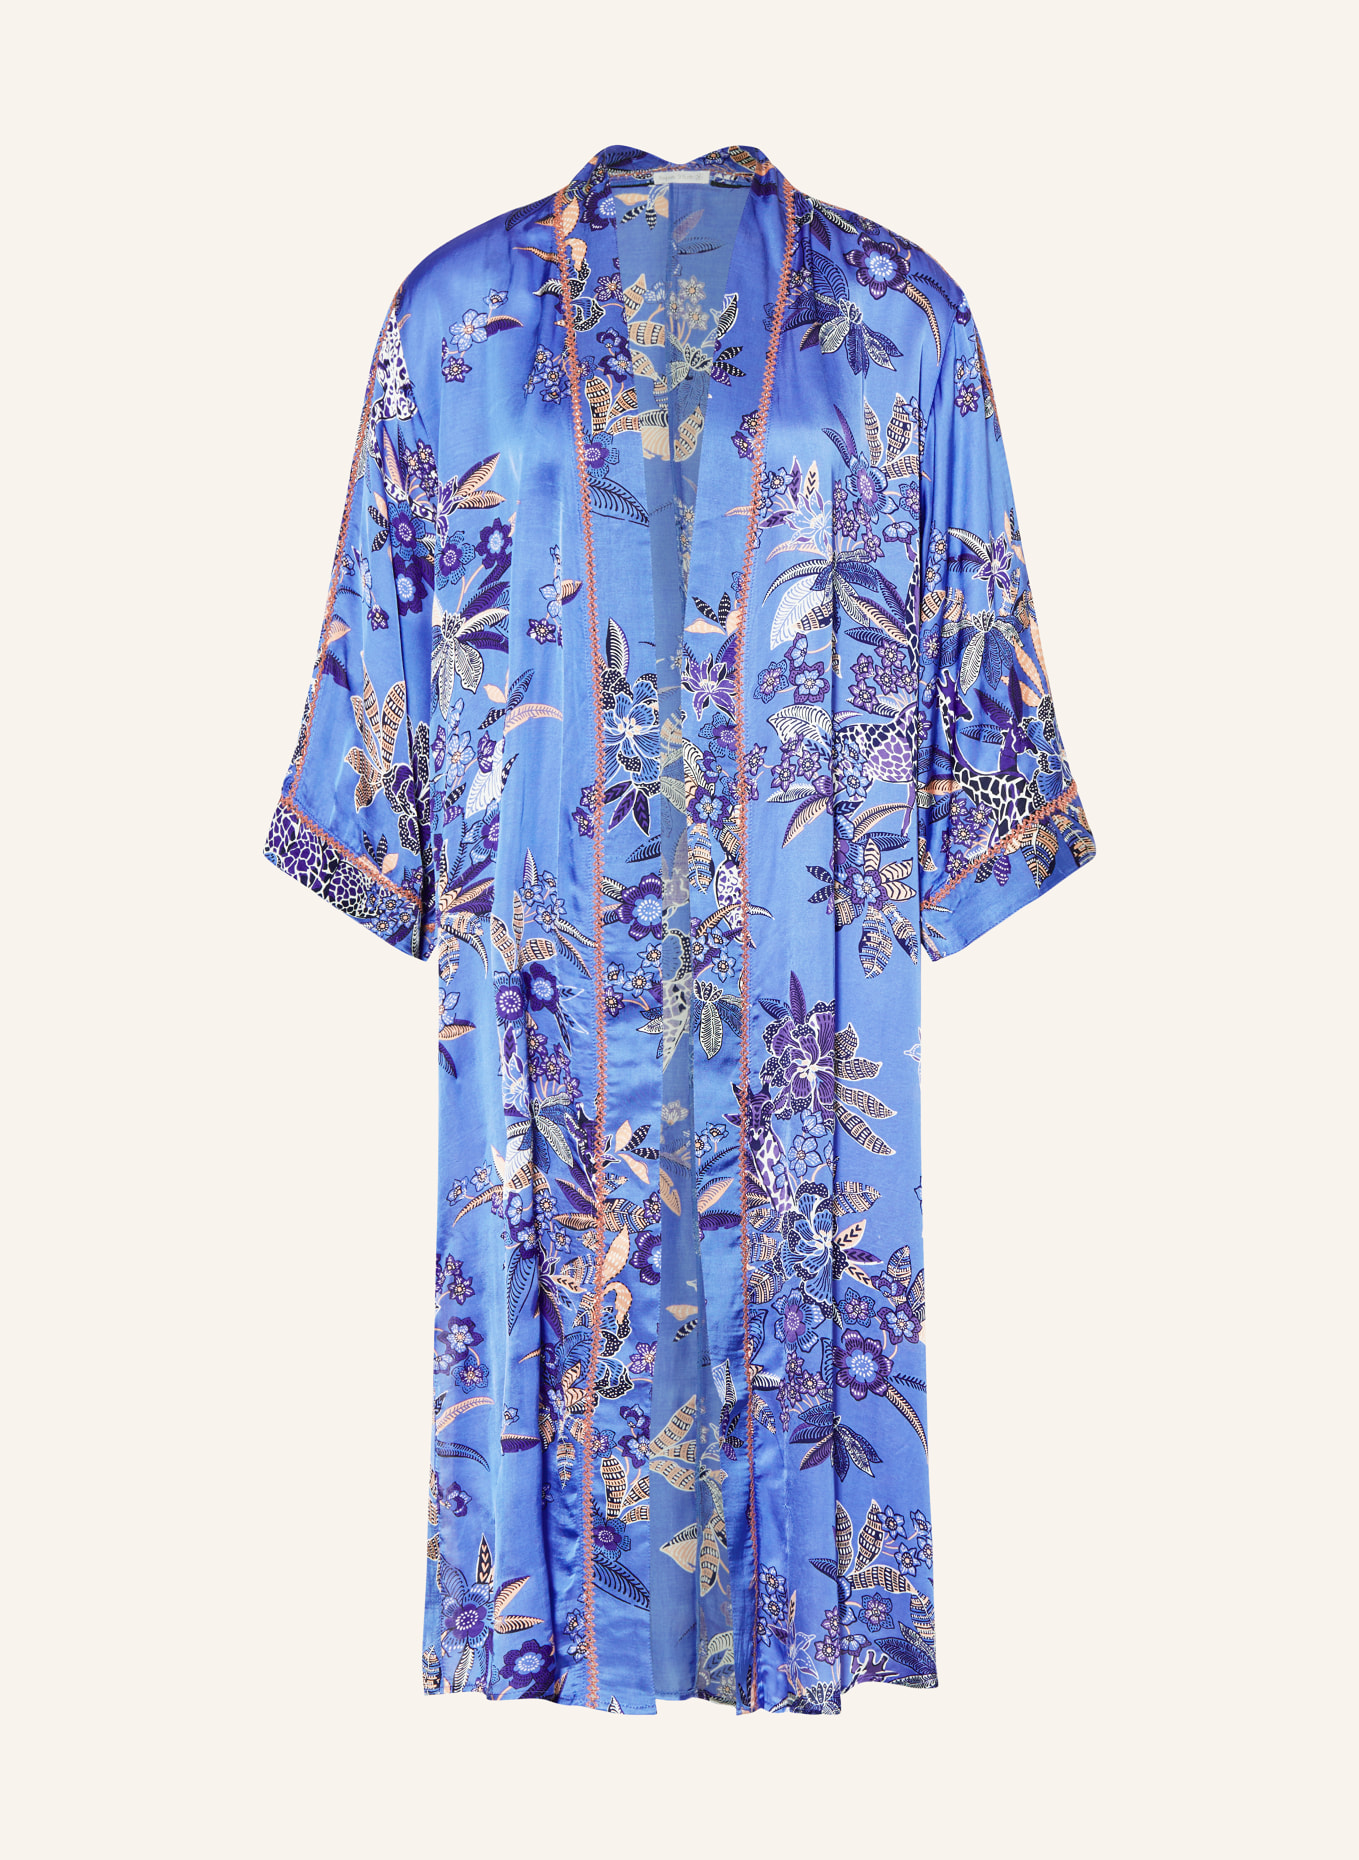 Poupette St Barth Women's kimono ERICA in satin, Color: BLUE/ WHITE/ PURPLE (Image 1)